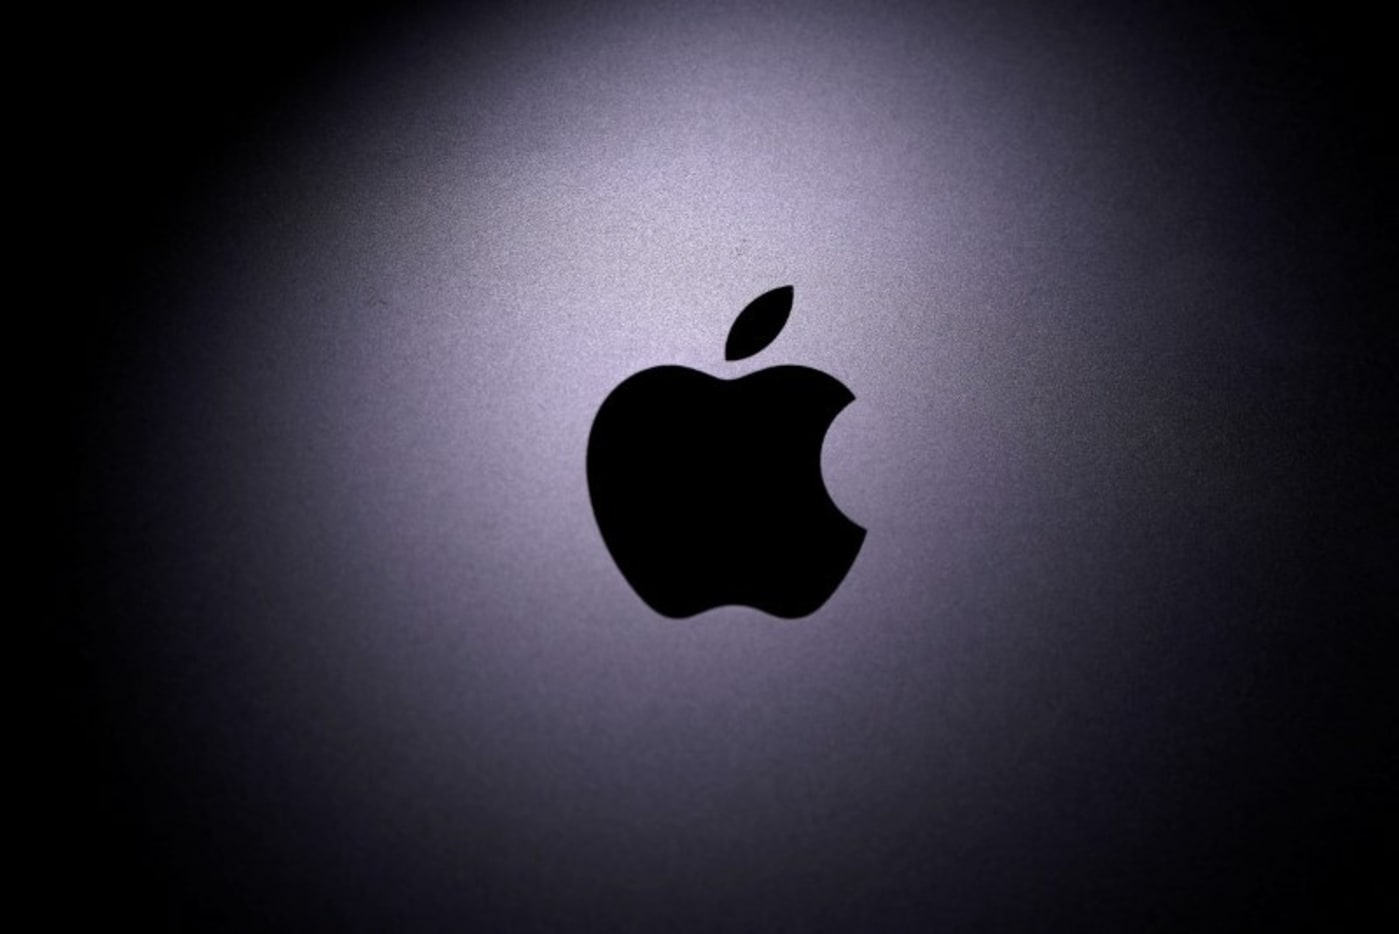 Einige Apple-Benutzer sagen, dass sie auf mysteriöse Weise von ihren Konten ausgeschlossen wurden